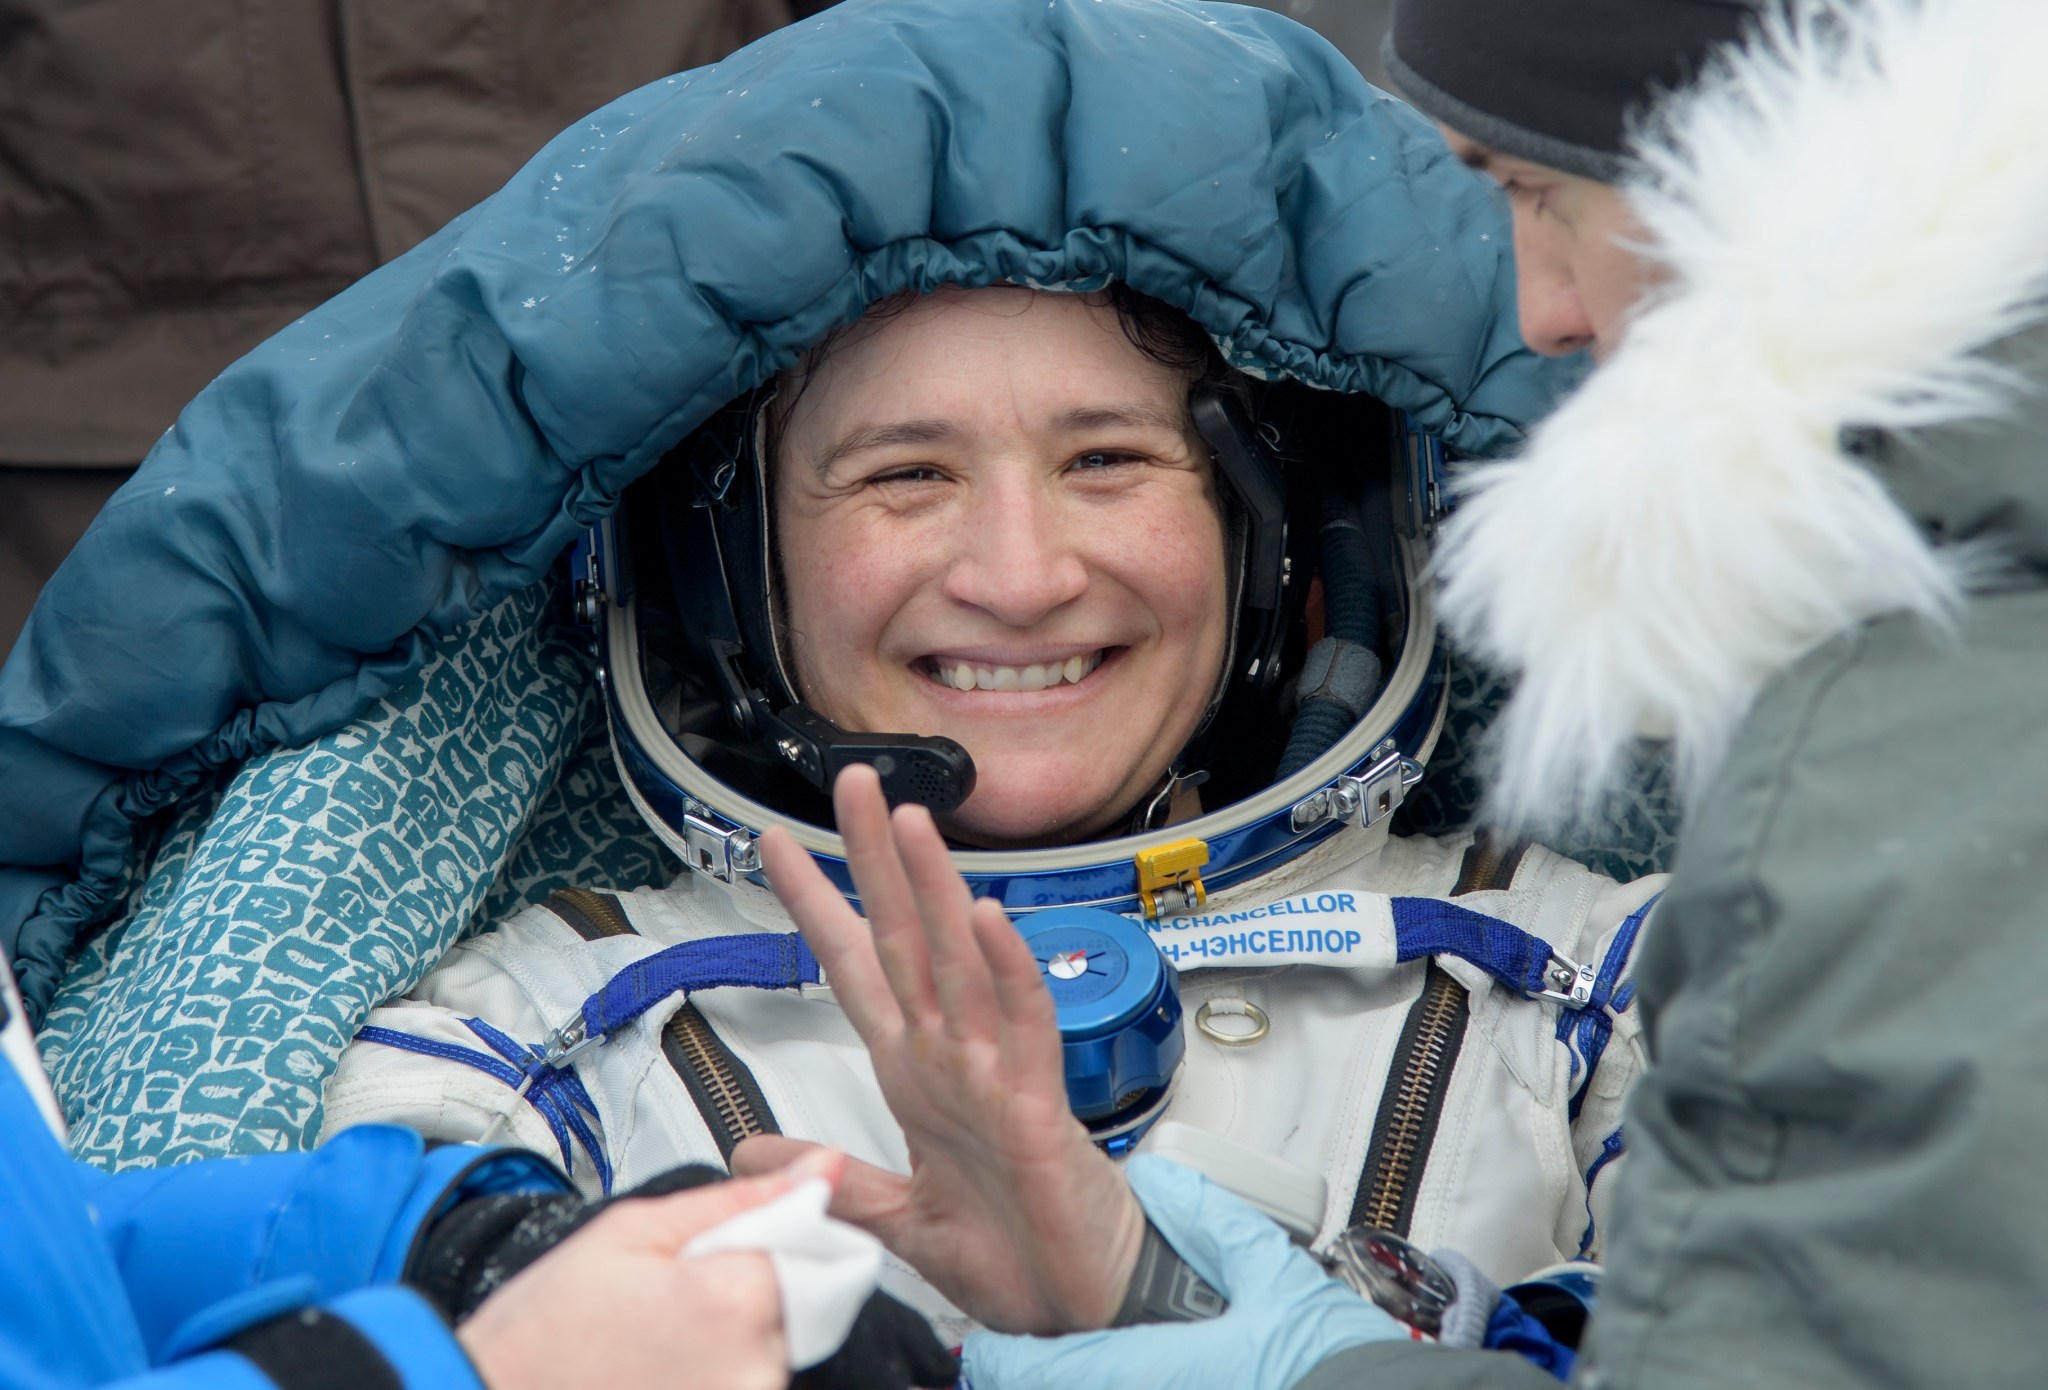 Serena Auñón-Chancellor of NASA after landing on Dec. 20, 2018.